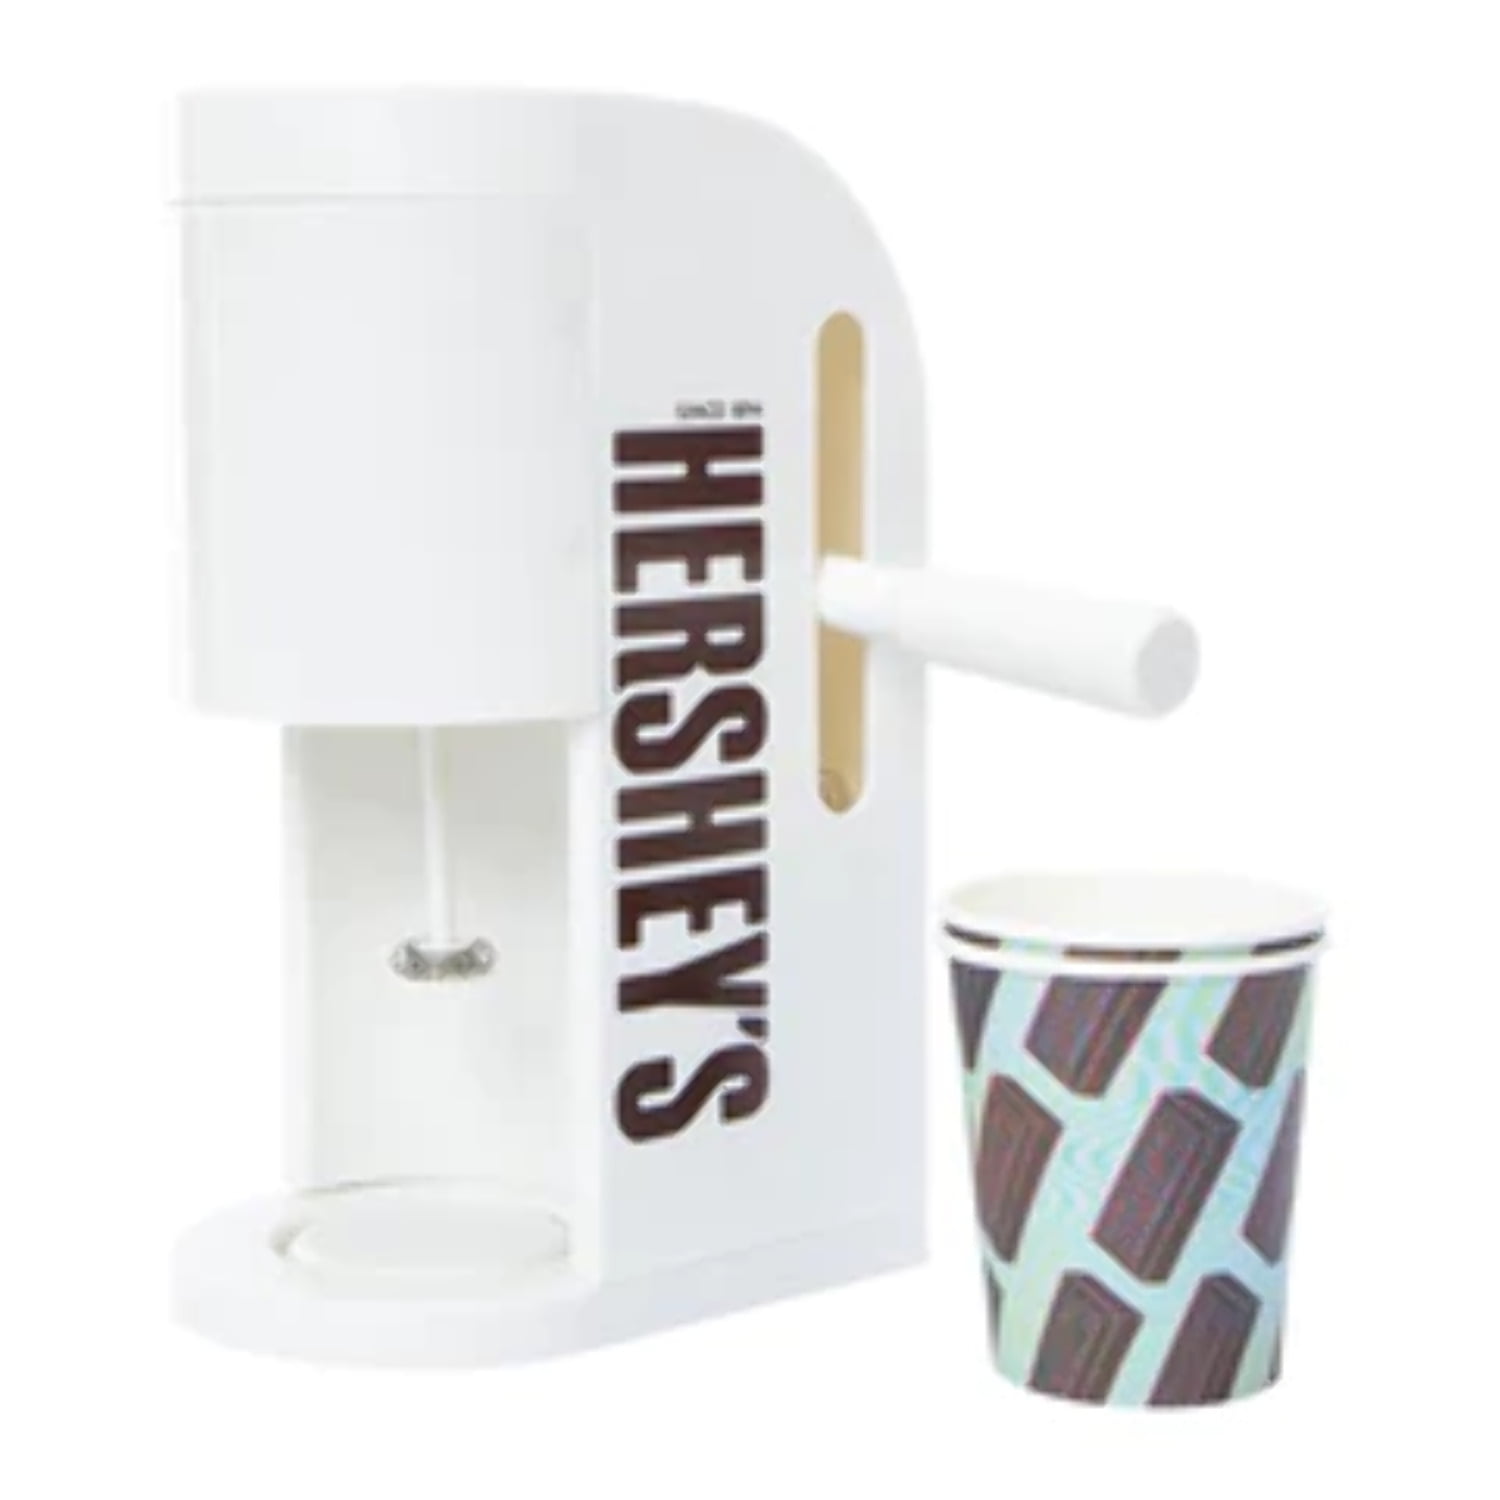 Hersheys Chocolate Drink Maker! #chocolatedrink #drinkmaker #fivebelow